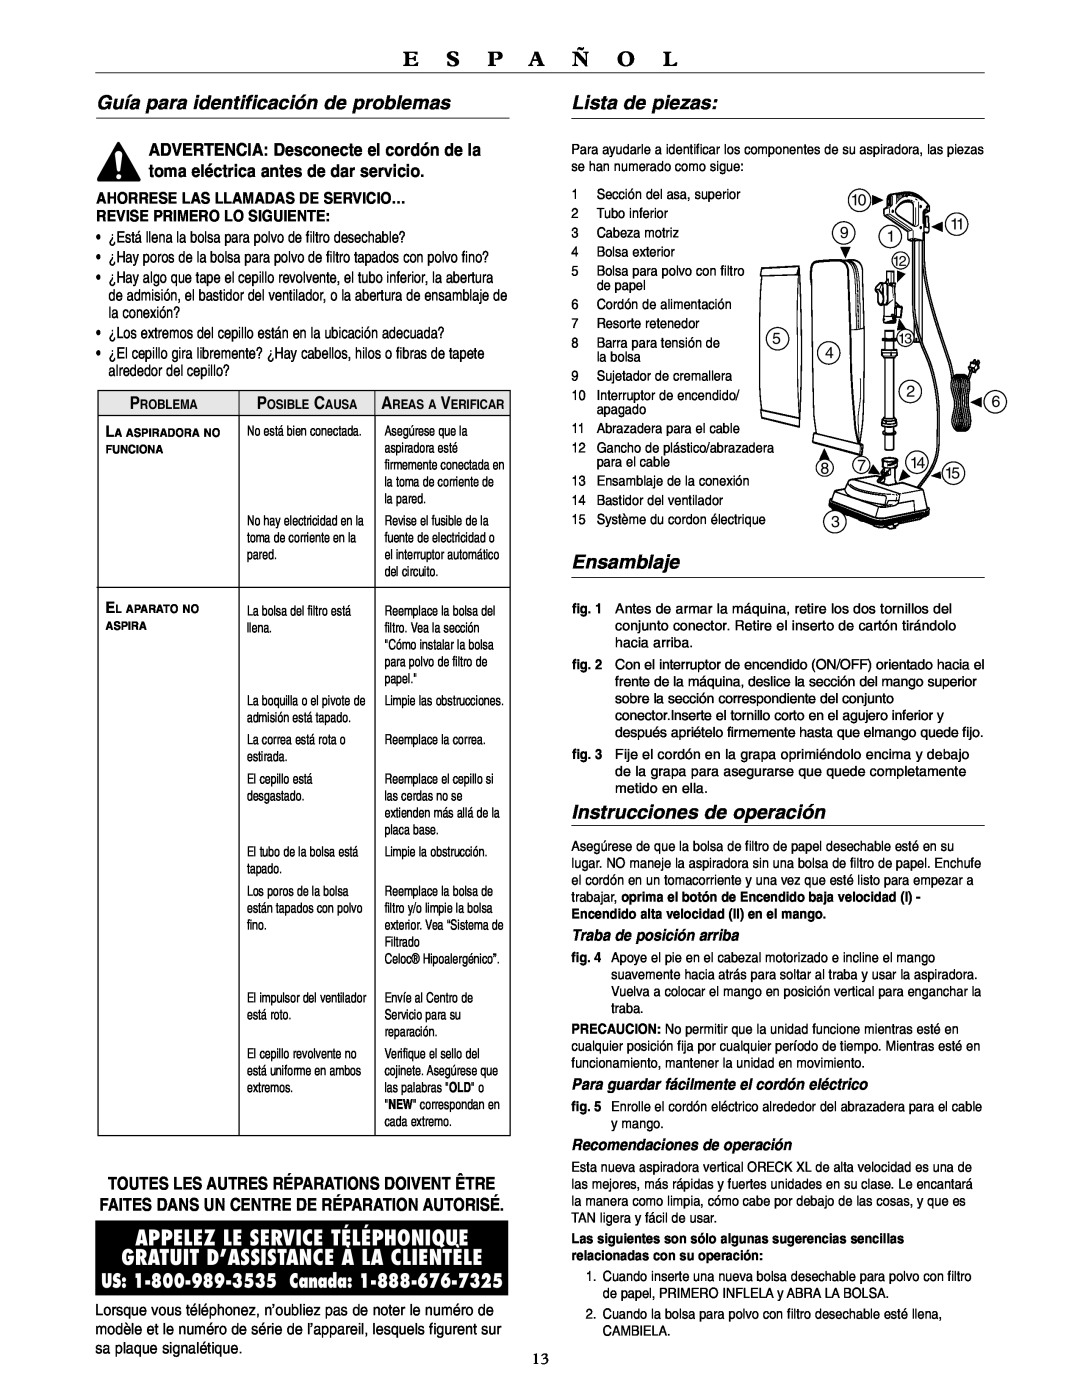 Oreck U4090H2 warranty Guía para identificación de problemas, Lista de piezas, Ensamblaje, Instrucciones de operación 